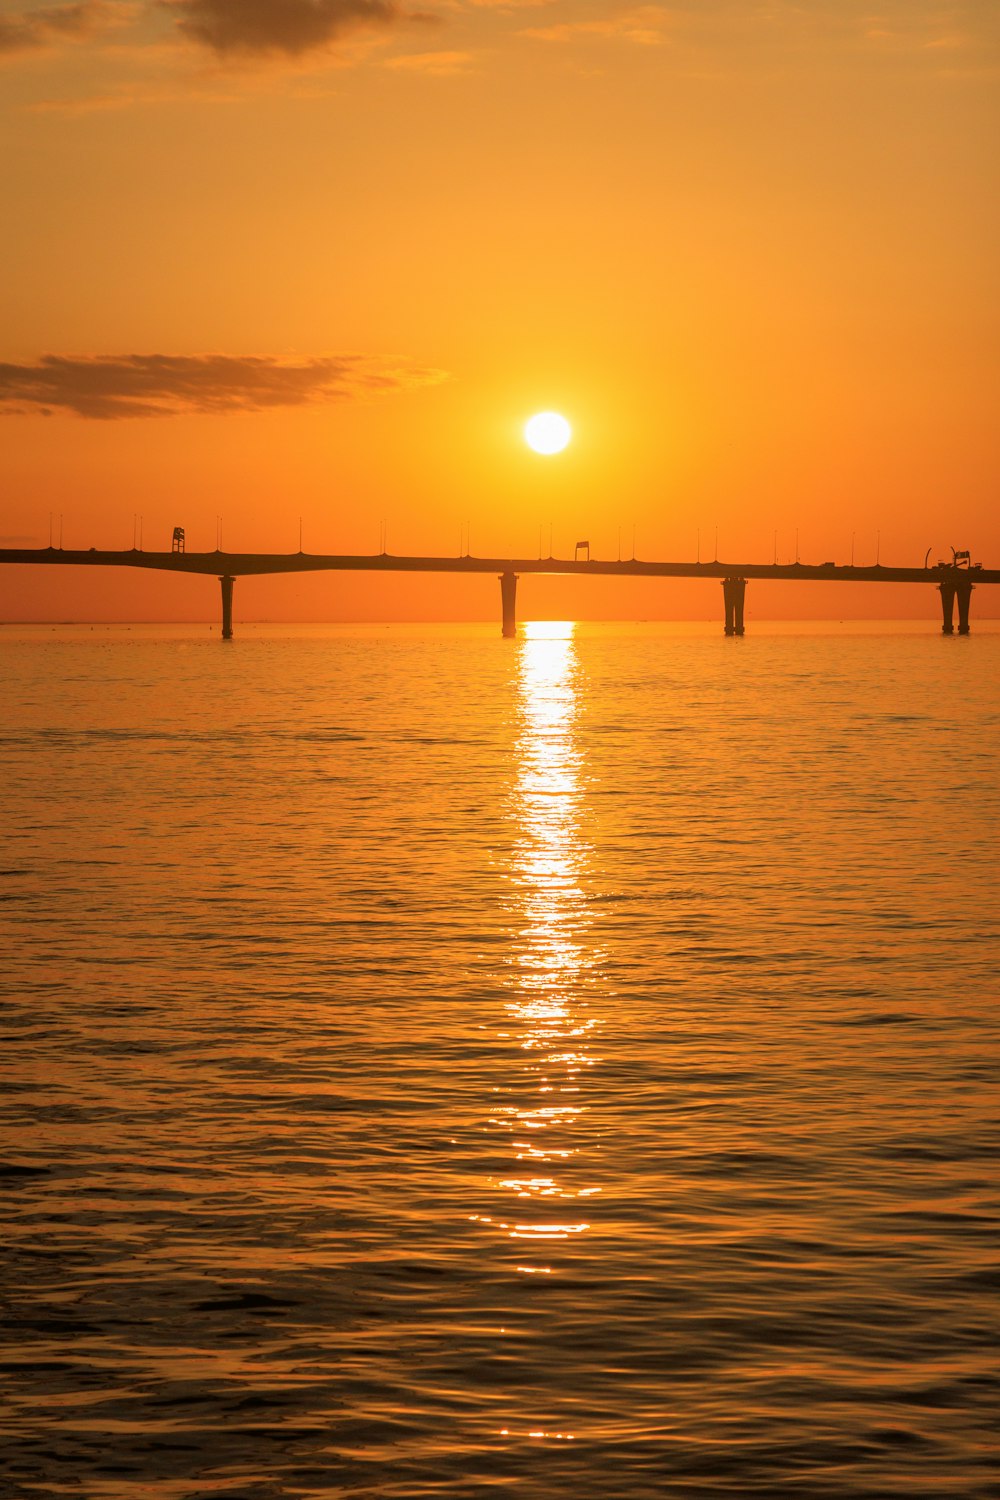 El sol se está poniendo sobre el agua con un puente en el fondo